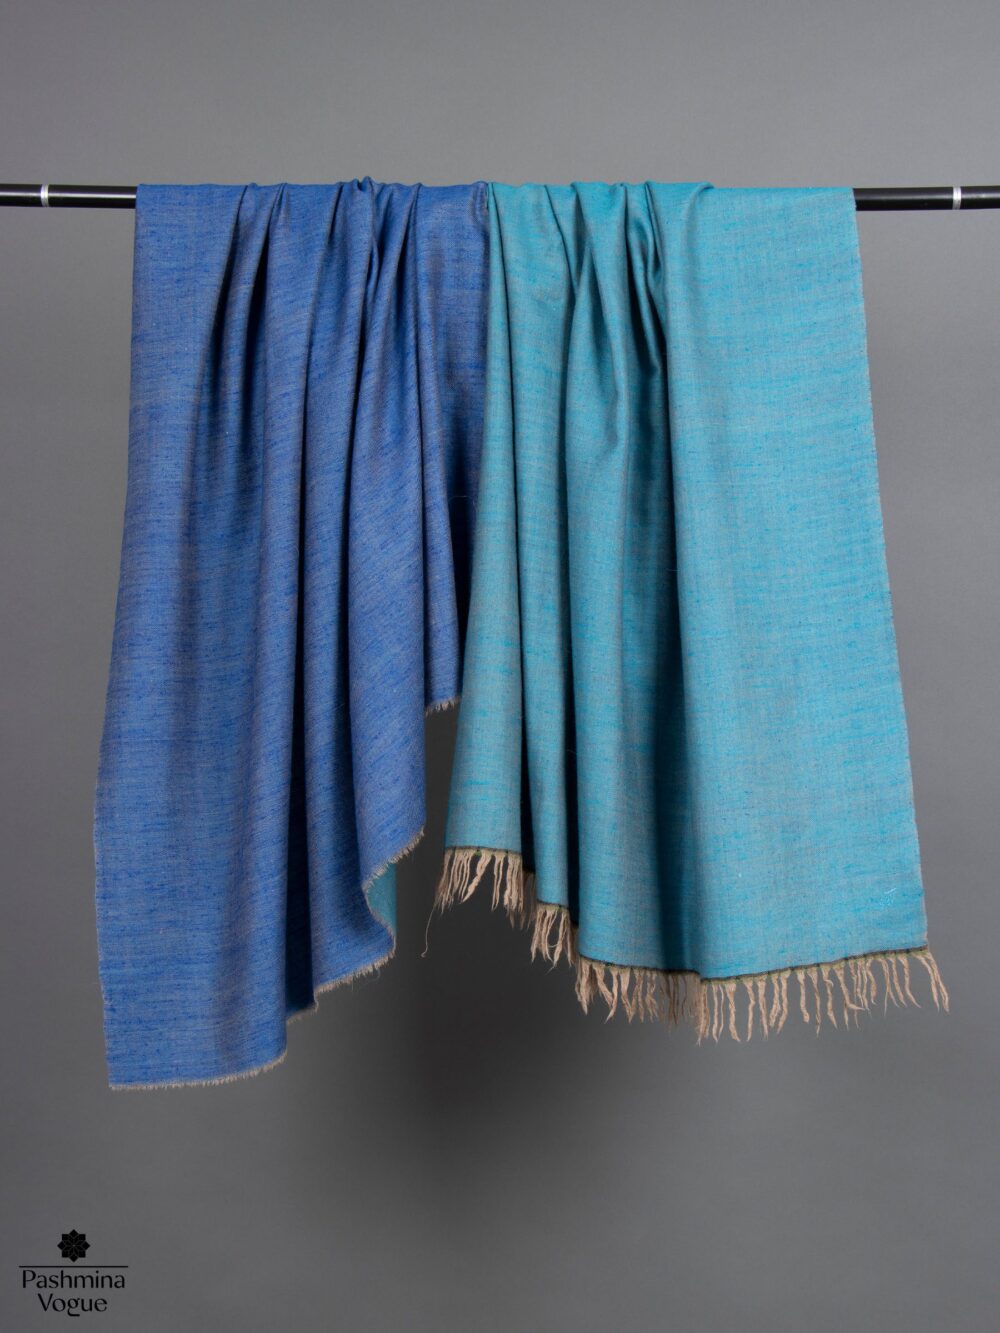 women's-pashmina-shawl-price